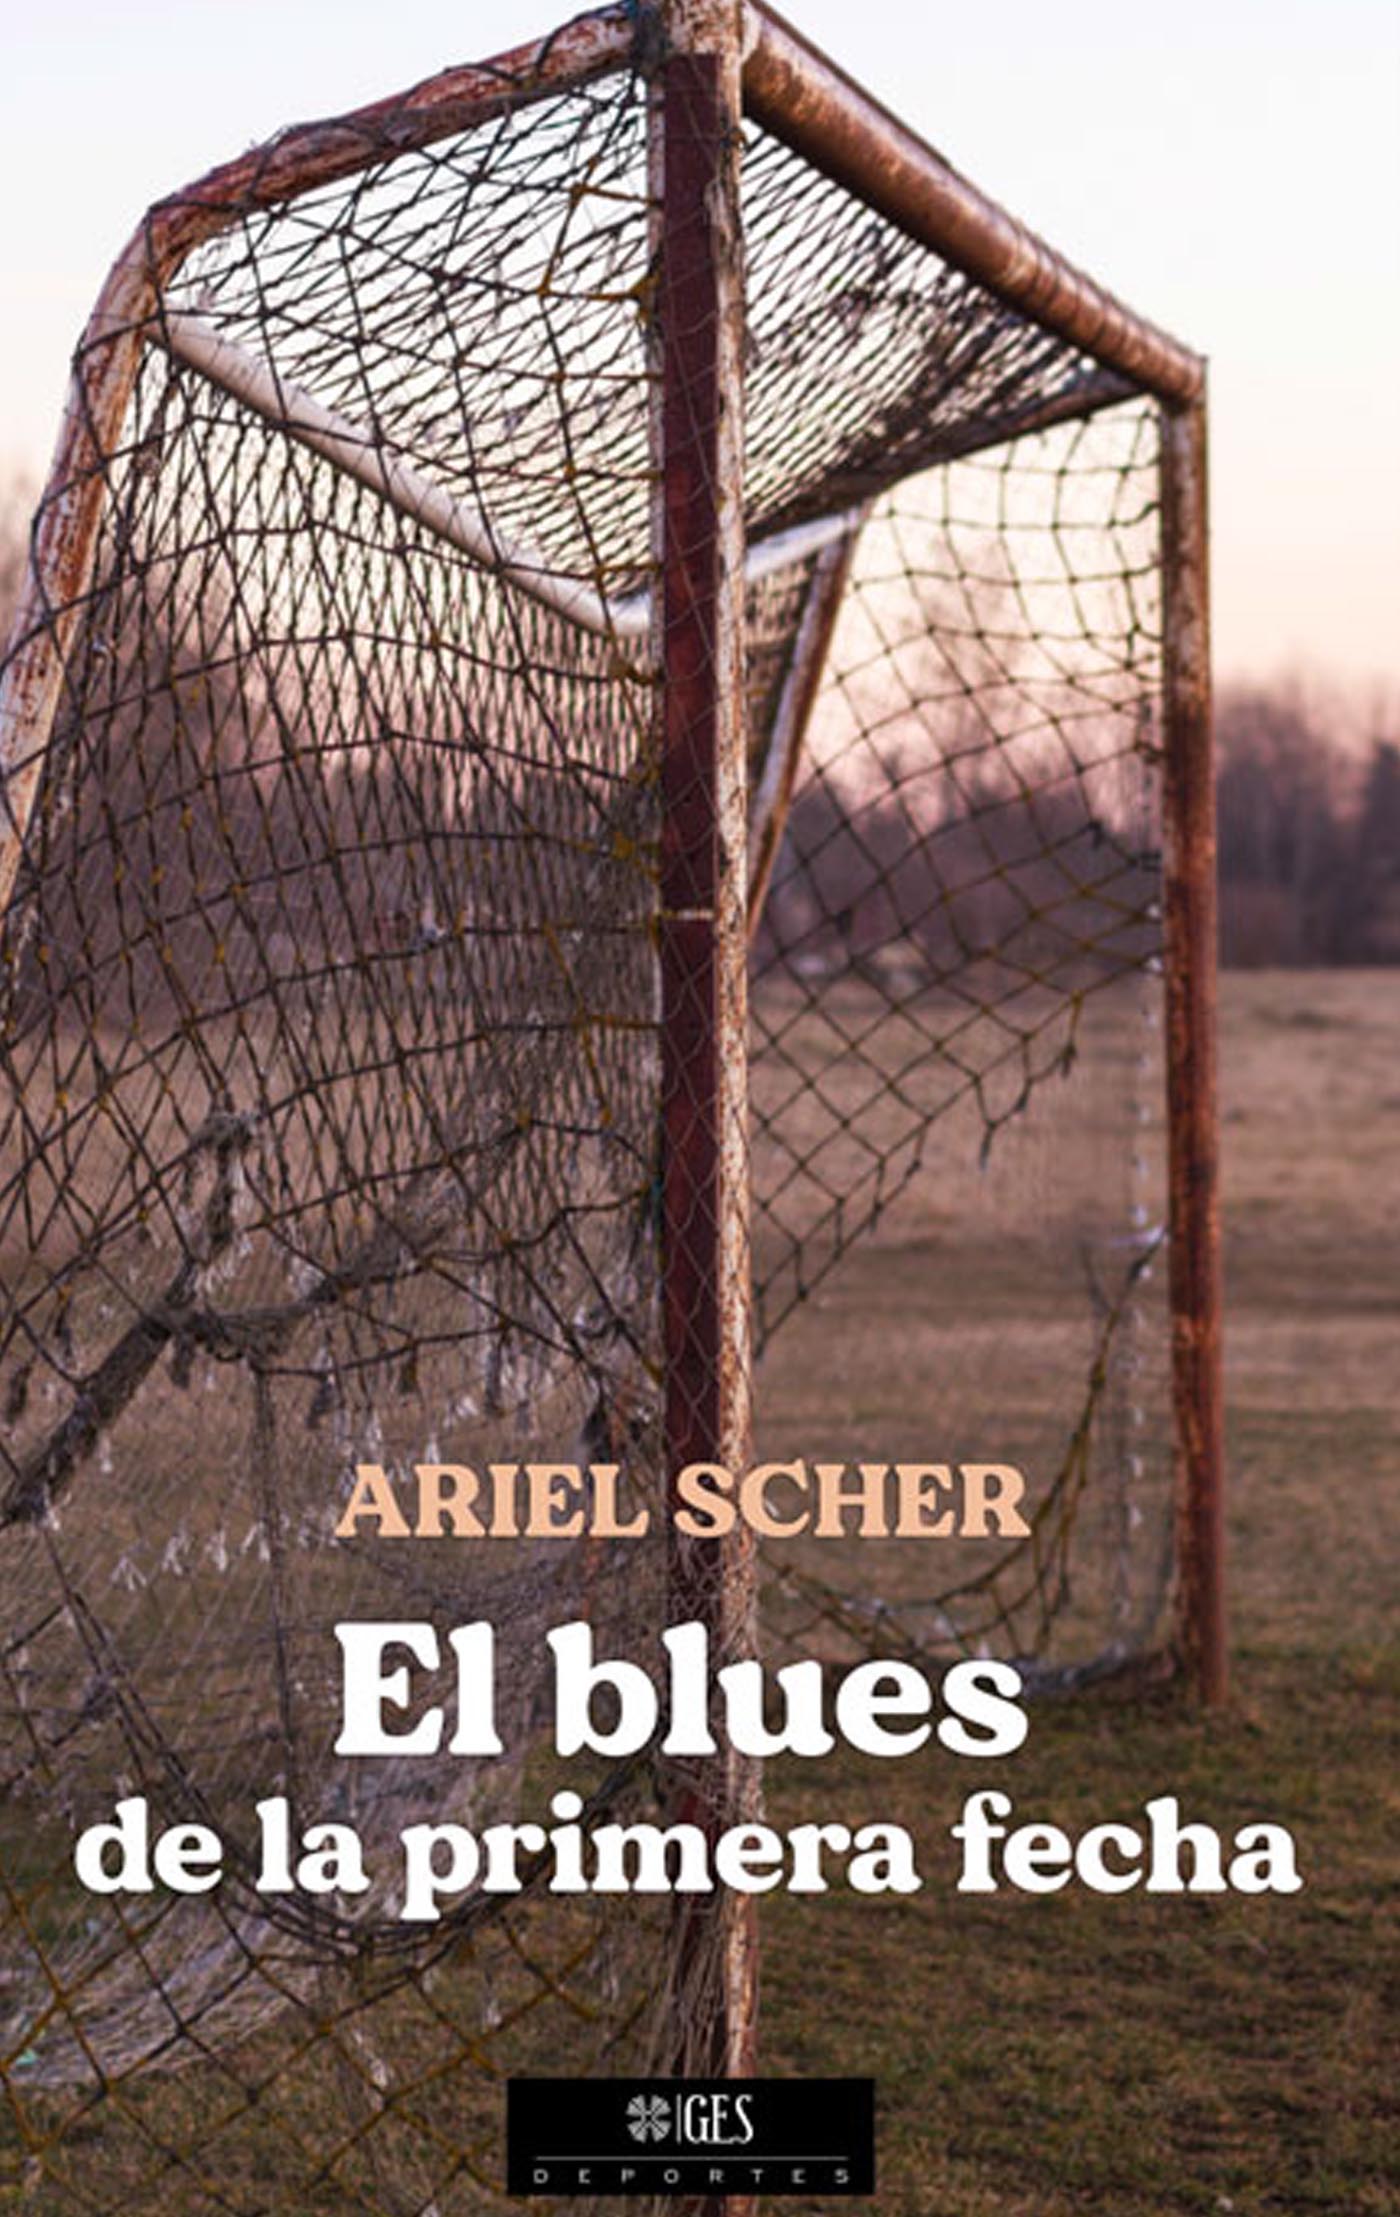 El blues de la primera fecha Ariel Scher